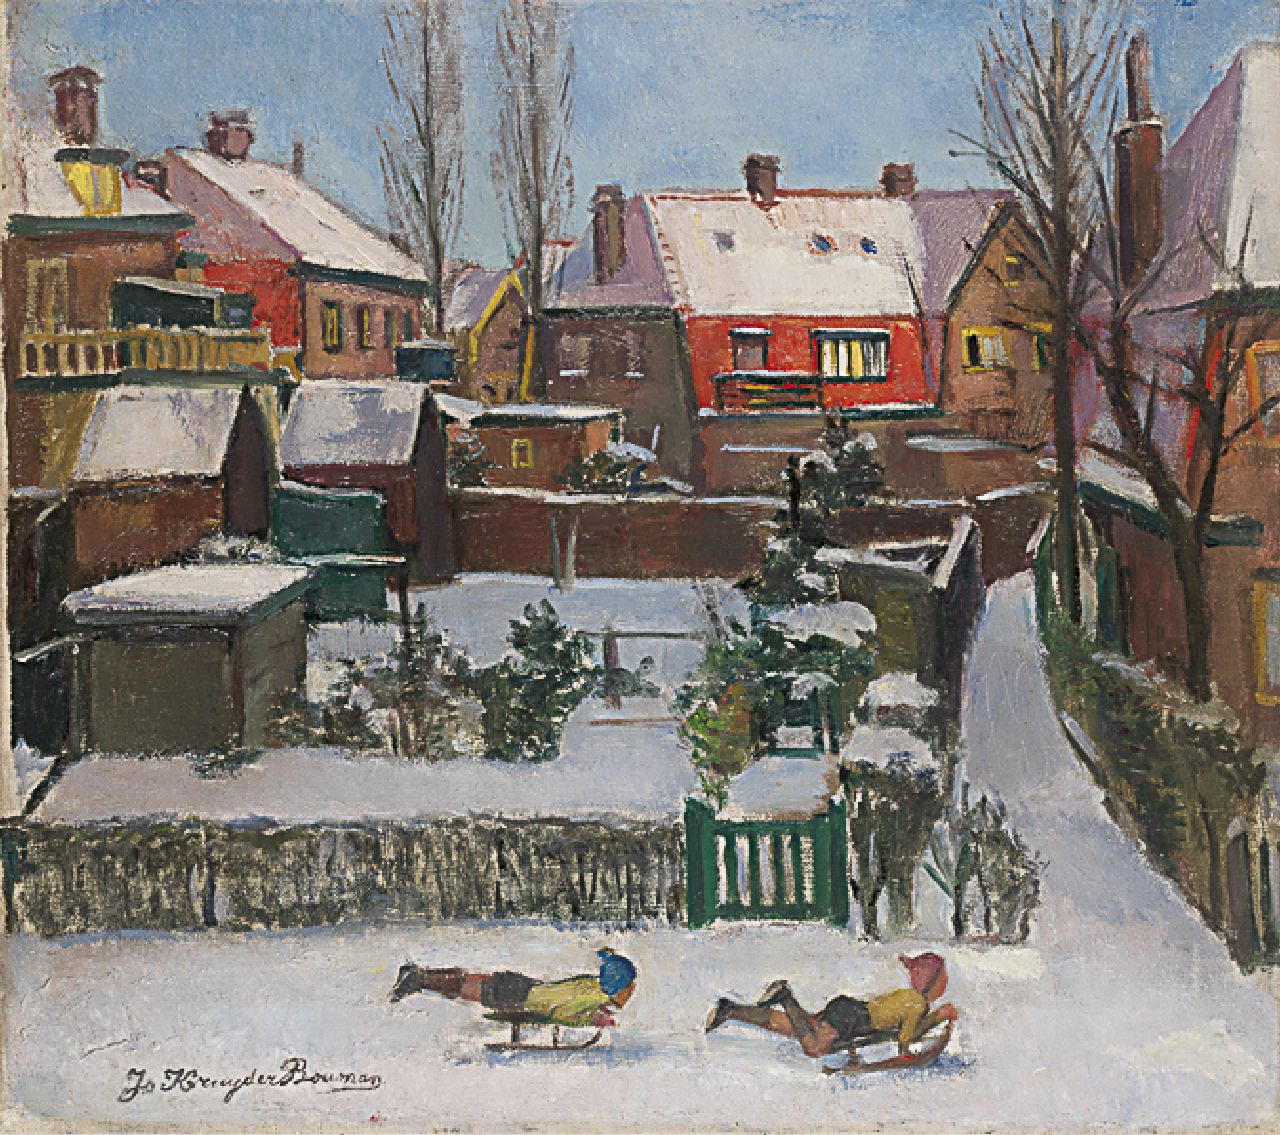 Jo Kruyder-Bouman | Wintervermaak, olieverf op doek, 40,3 x 45,0 cm, gesigneerd l.o. en gedateerd 1942